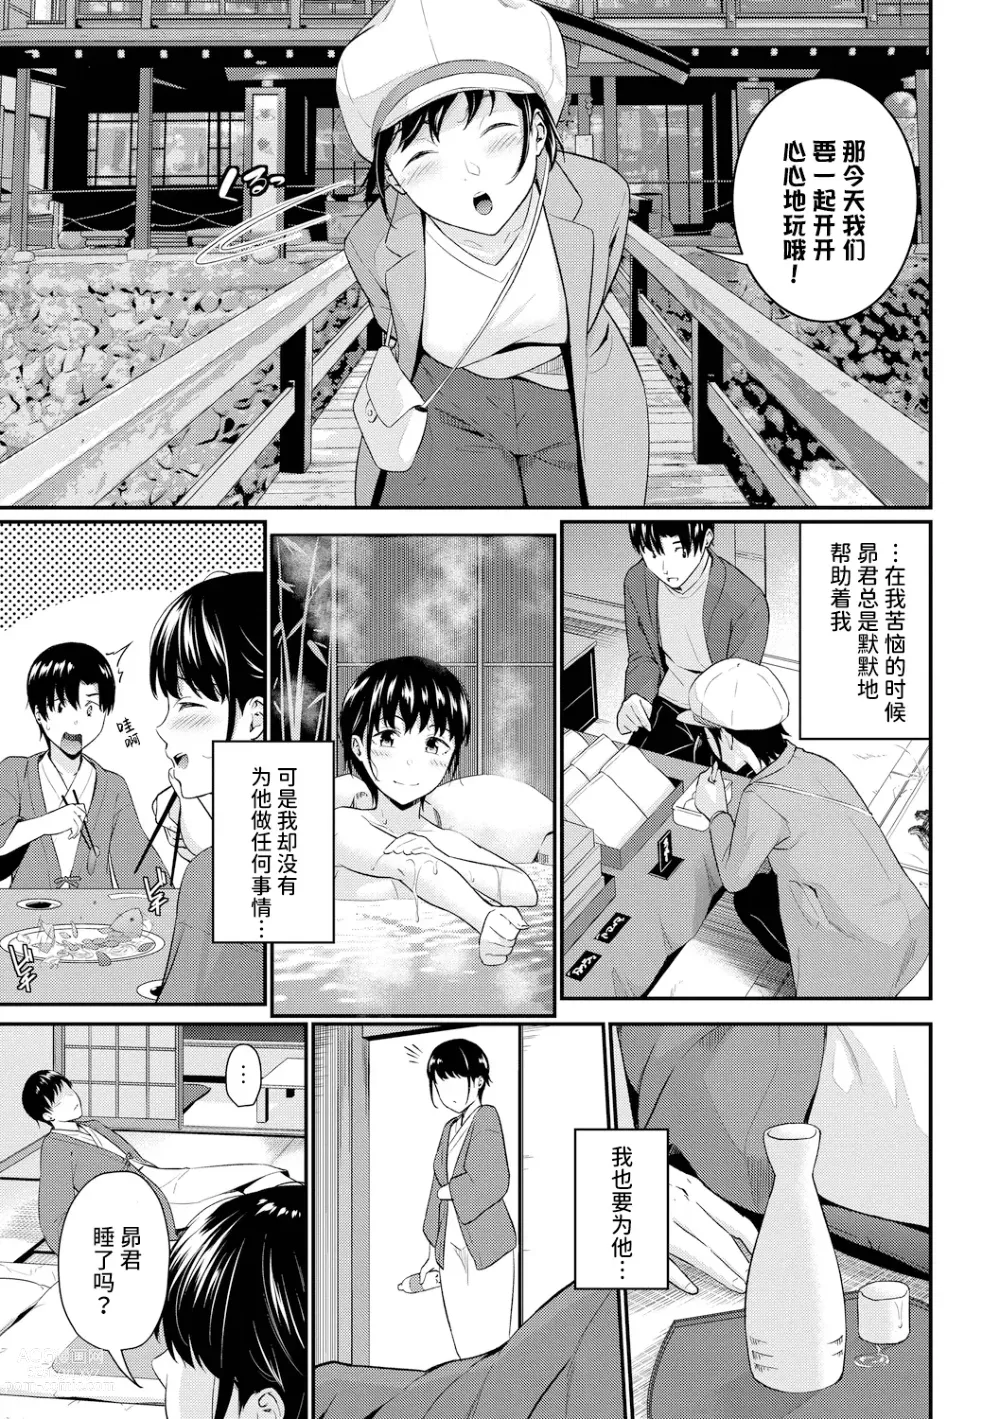 Page 6 of manga シャイミートリップ+続・シャイミートリップ